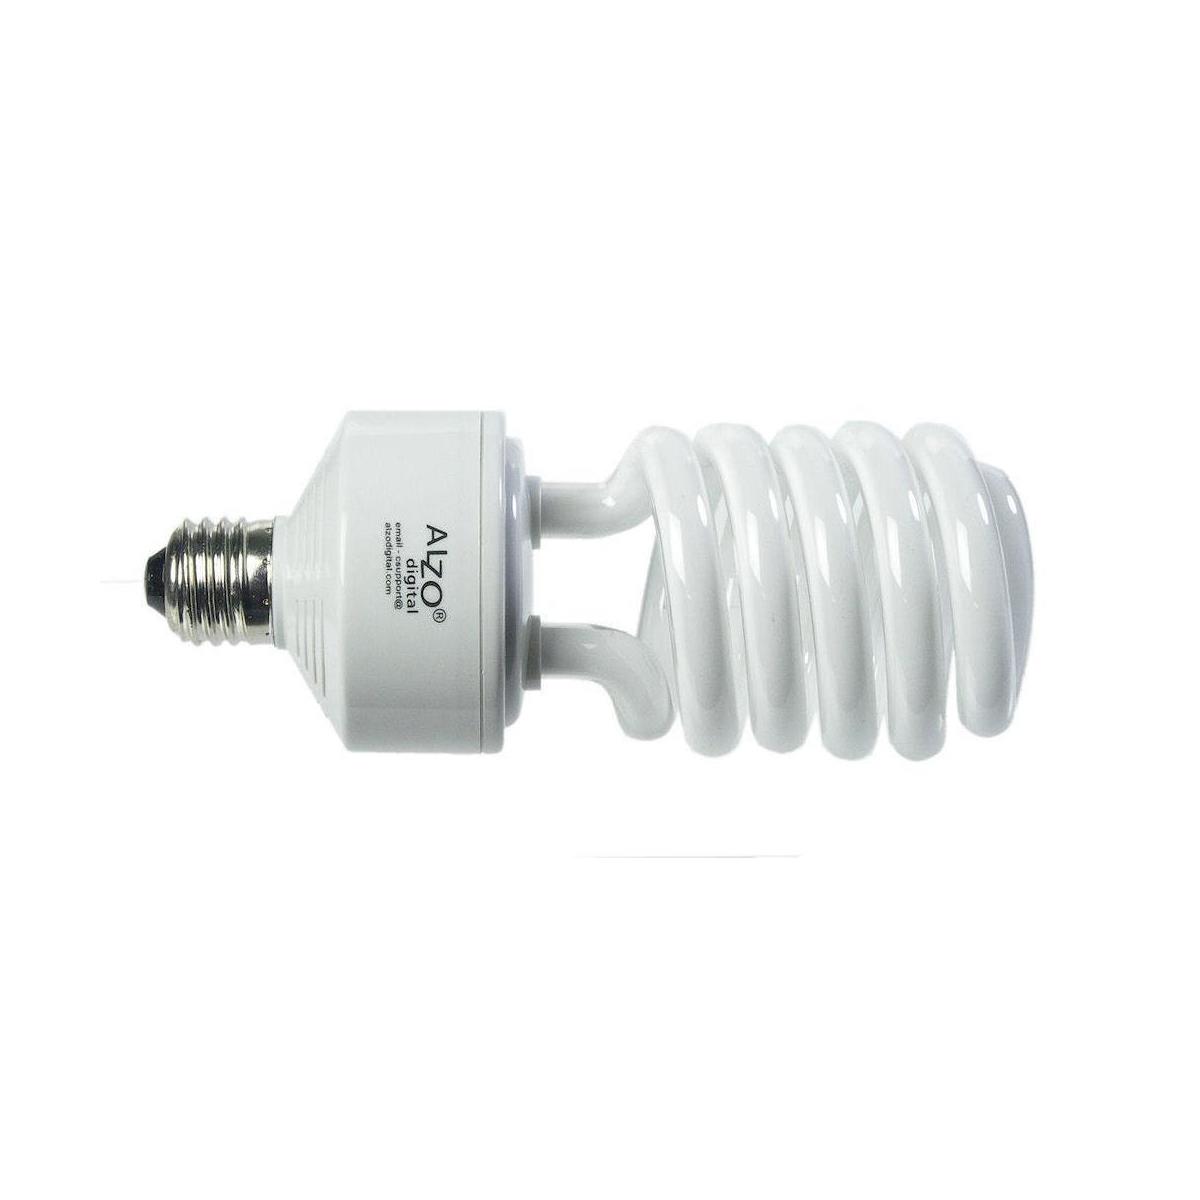 Image of Alzo Digital 45W 120V Joyous Light Full Spectrum CFL Light Bulb